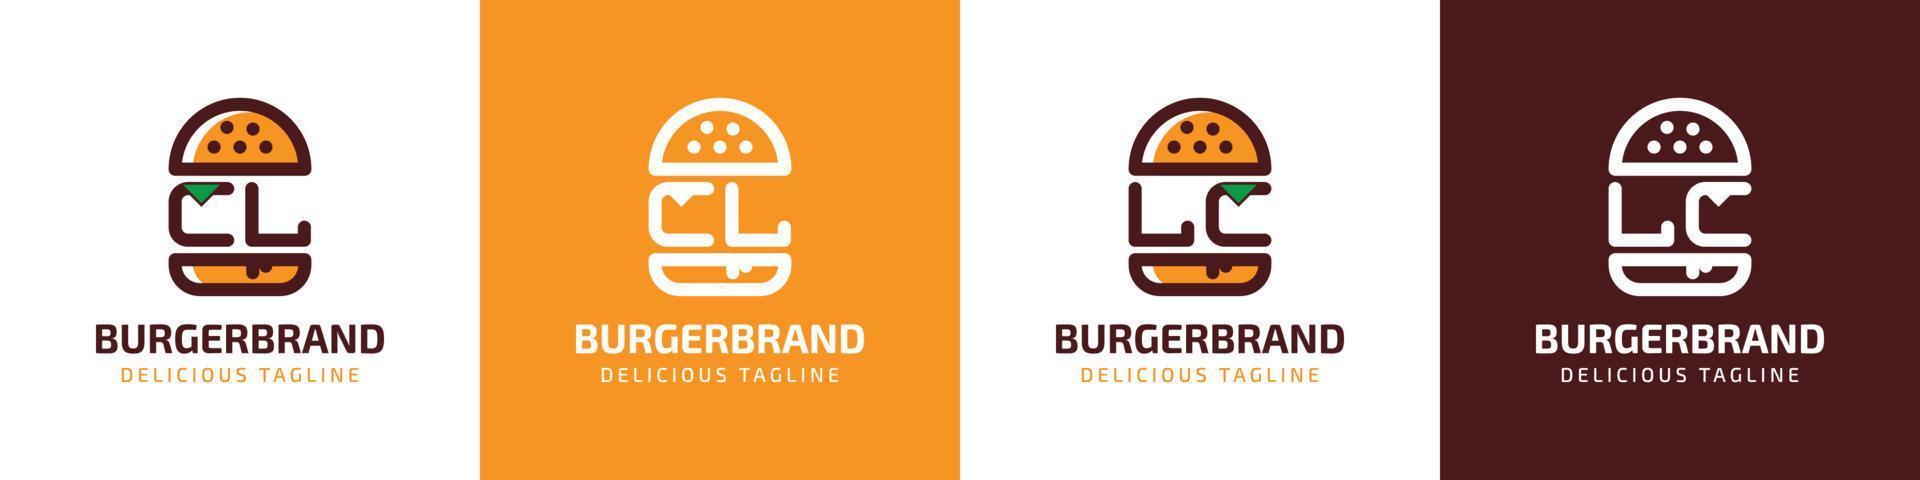 letra cl y lc hamburguesa logo, adecuado para ninguna negocio relacionado a hamburguesa con cl o lc iniciales. vector